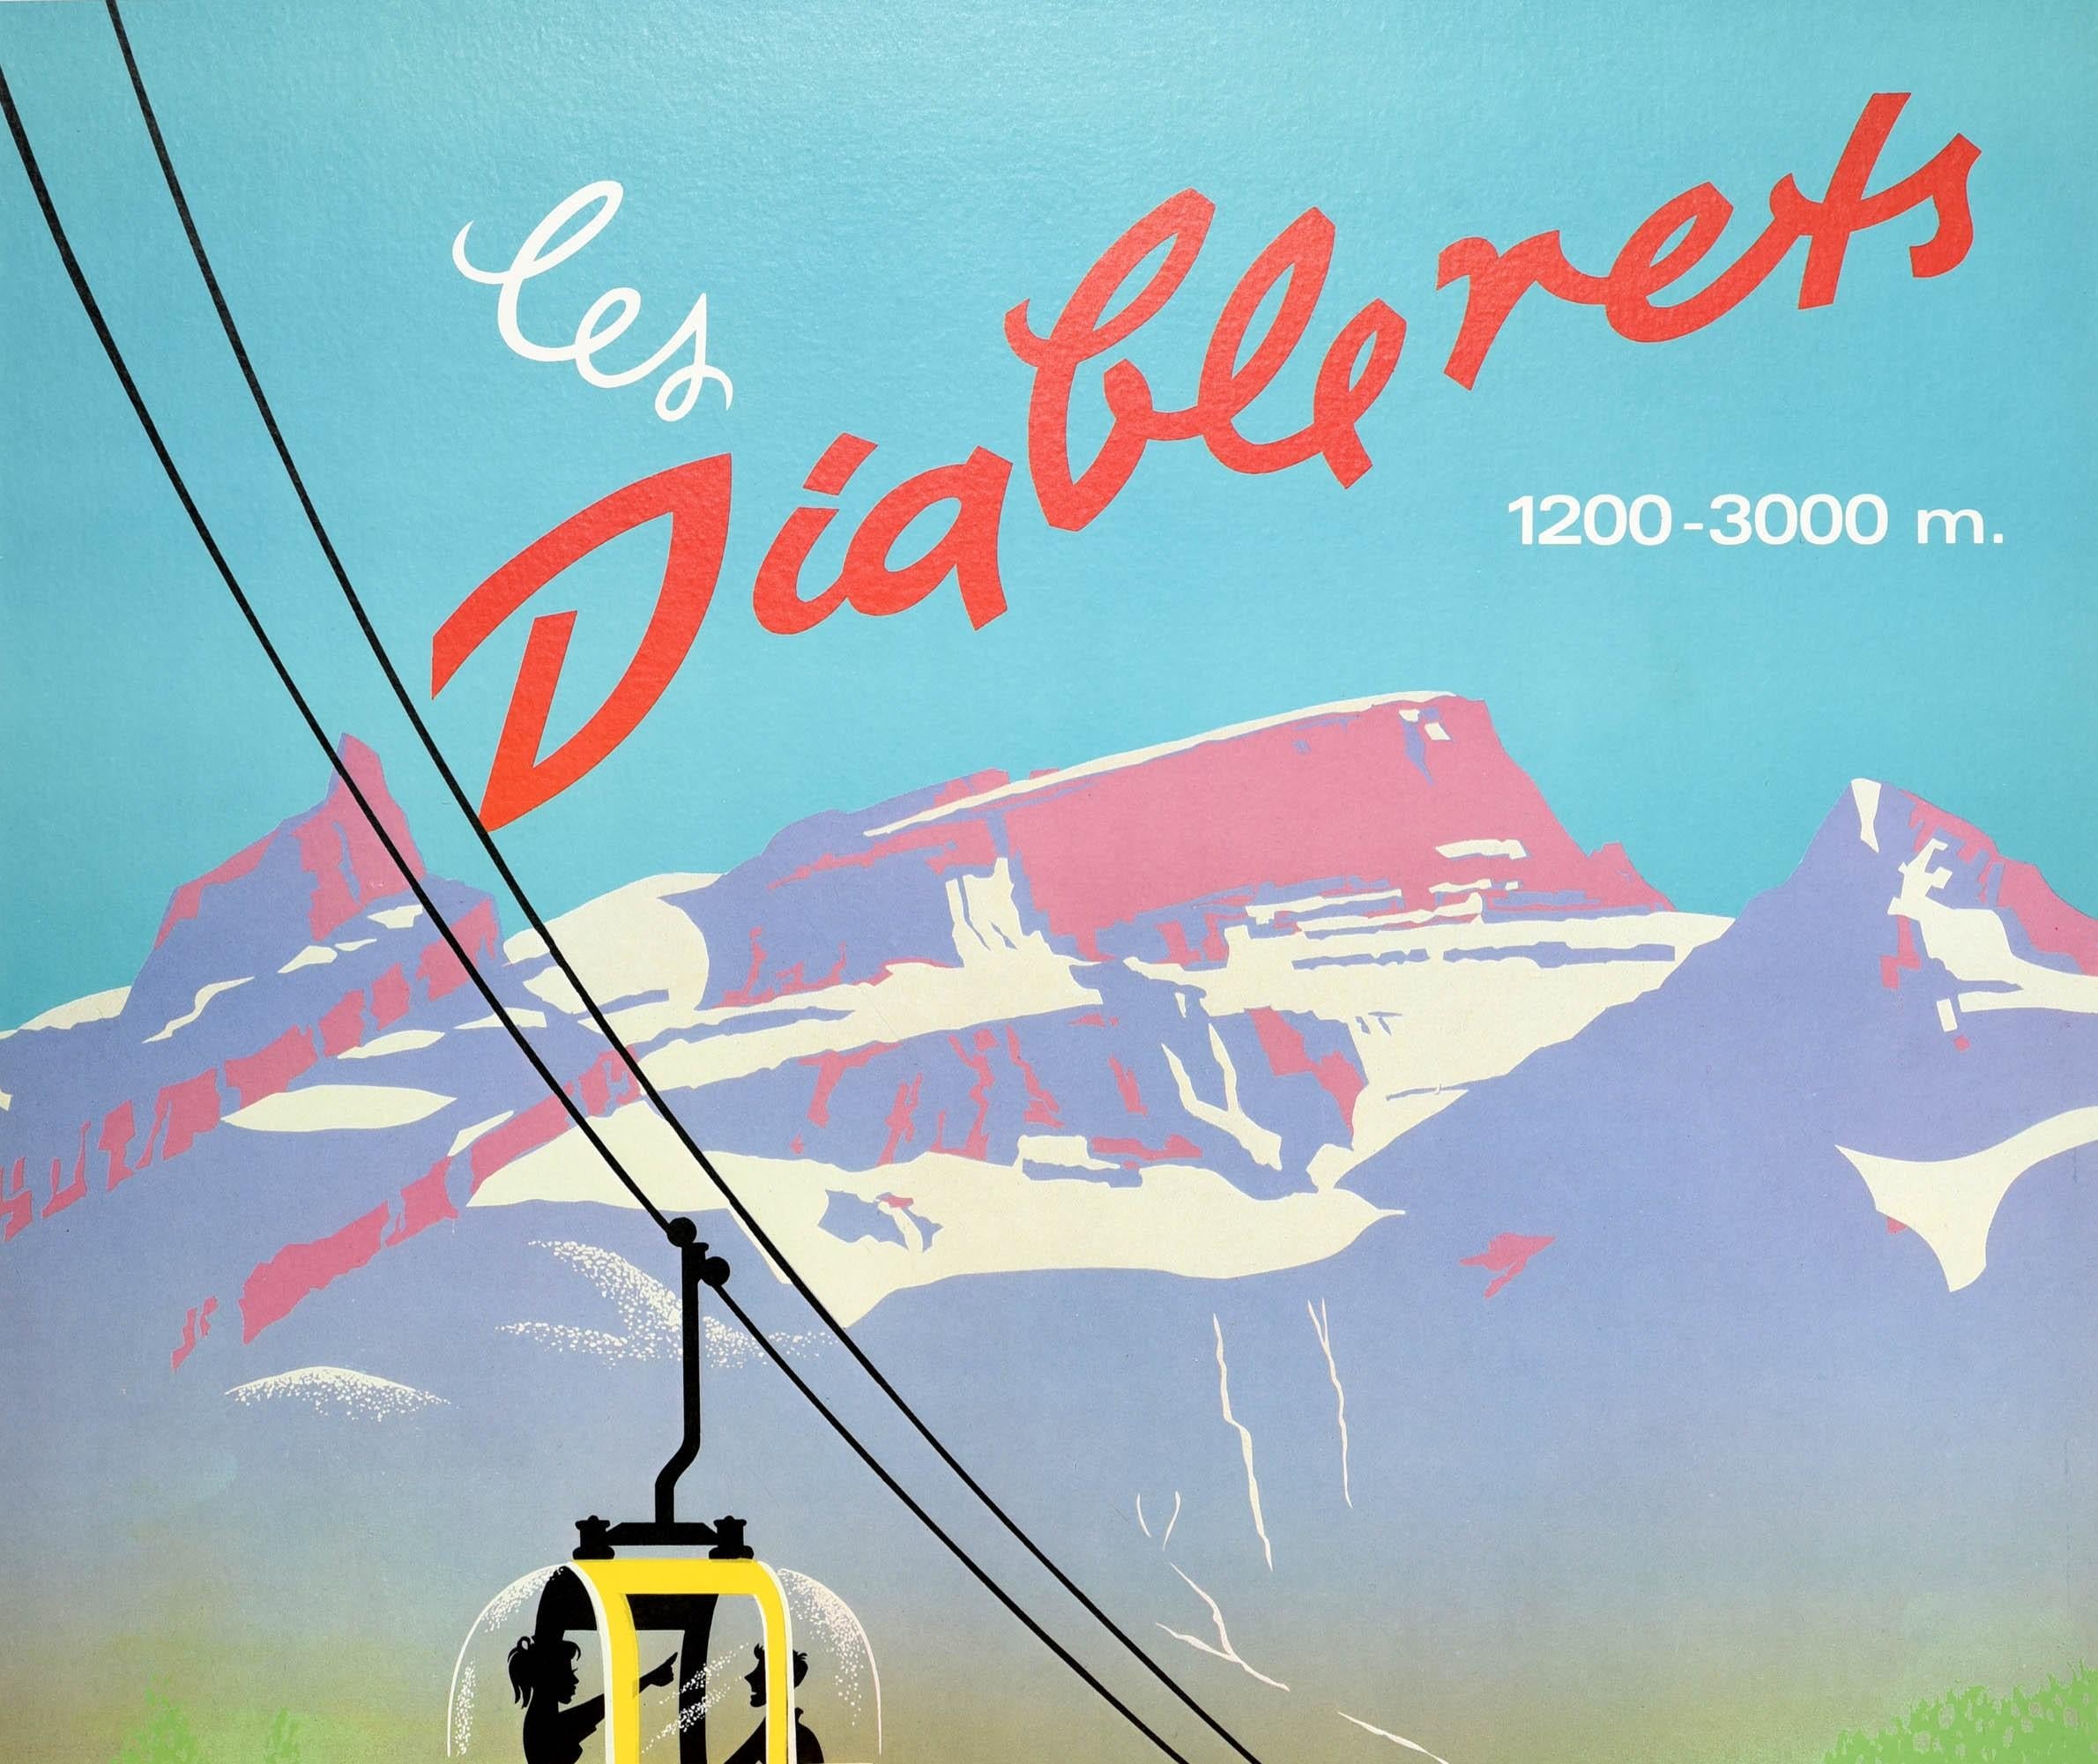 Original Vintage Poster Les Diablerets Switzerland Cable Car Swiss Alps Devil - Print by Martin Peikert